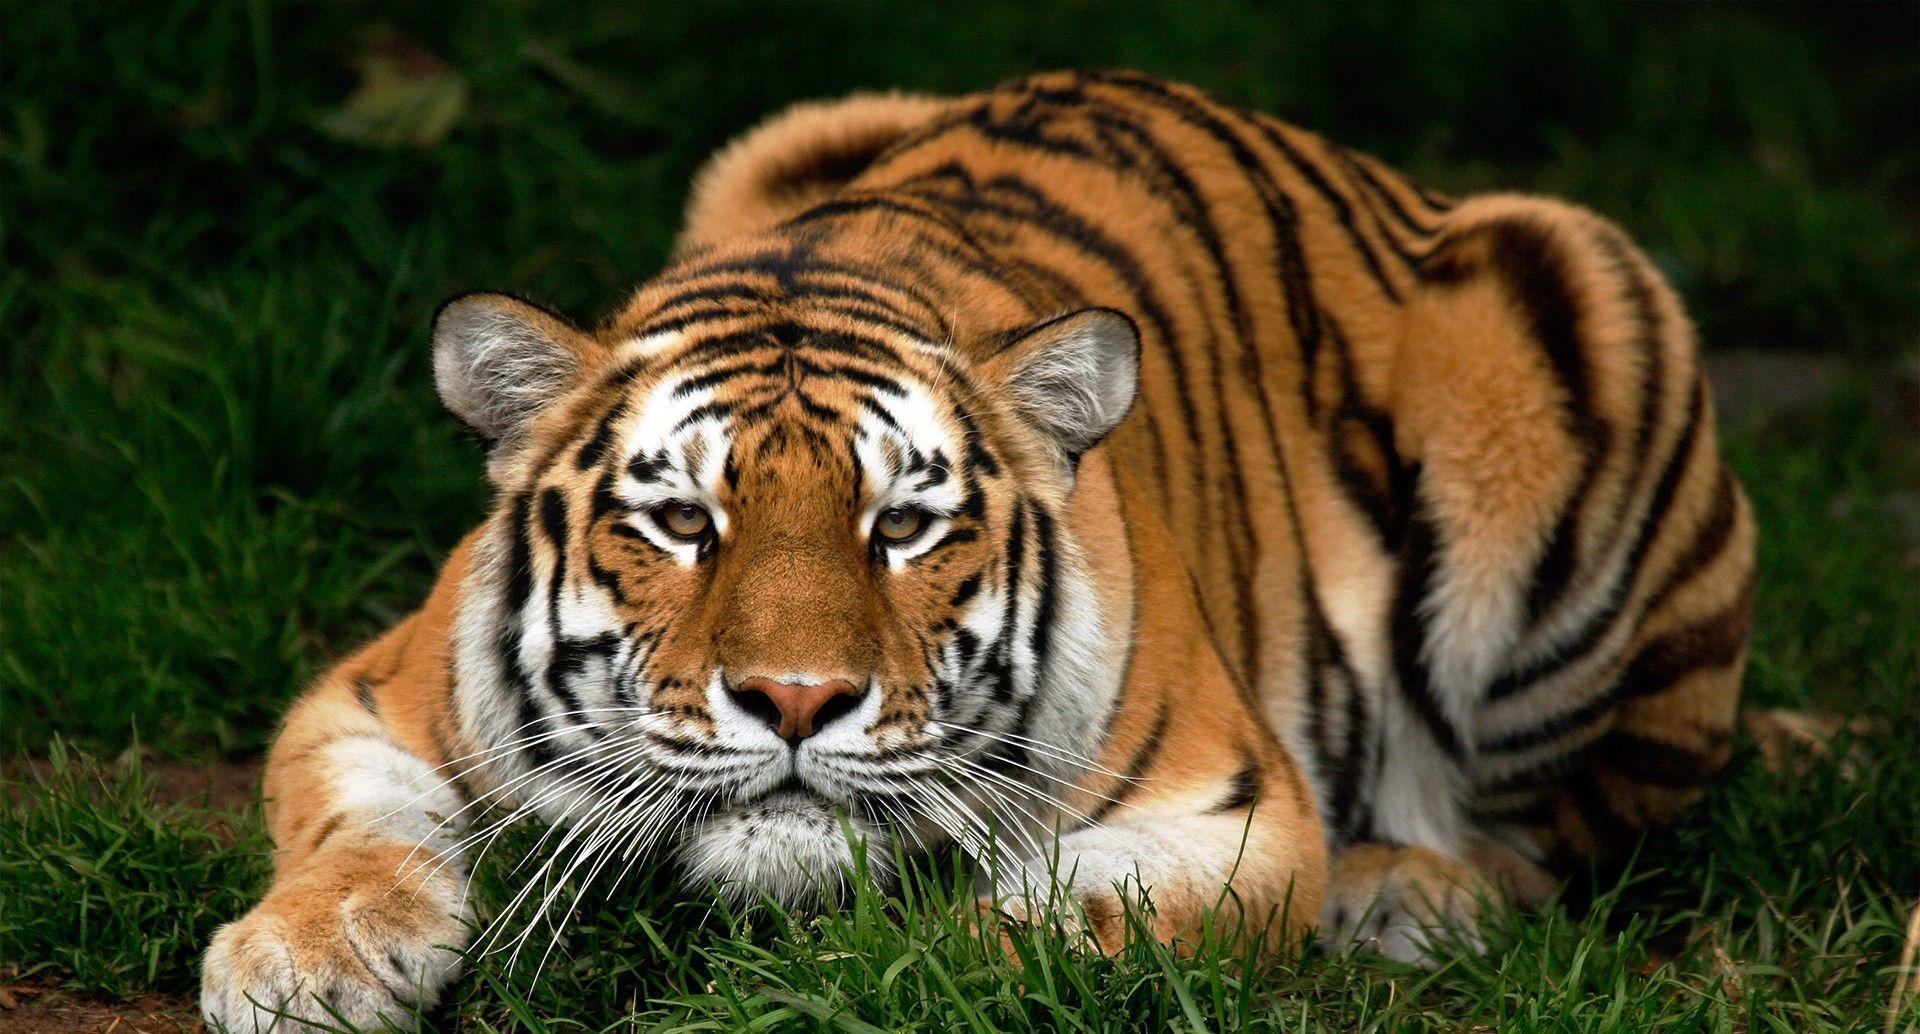 Tiger HD Wallpaper